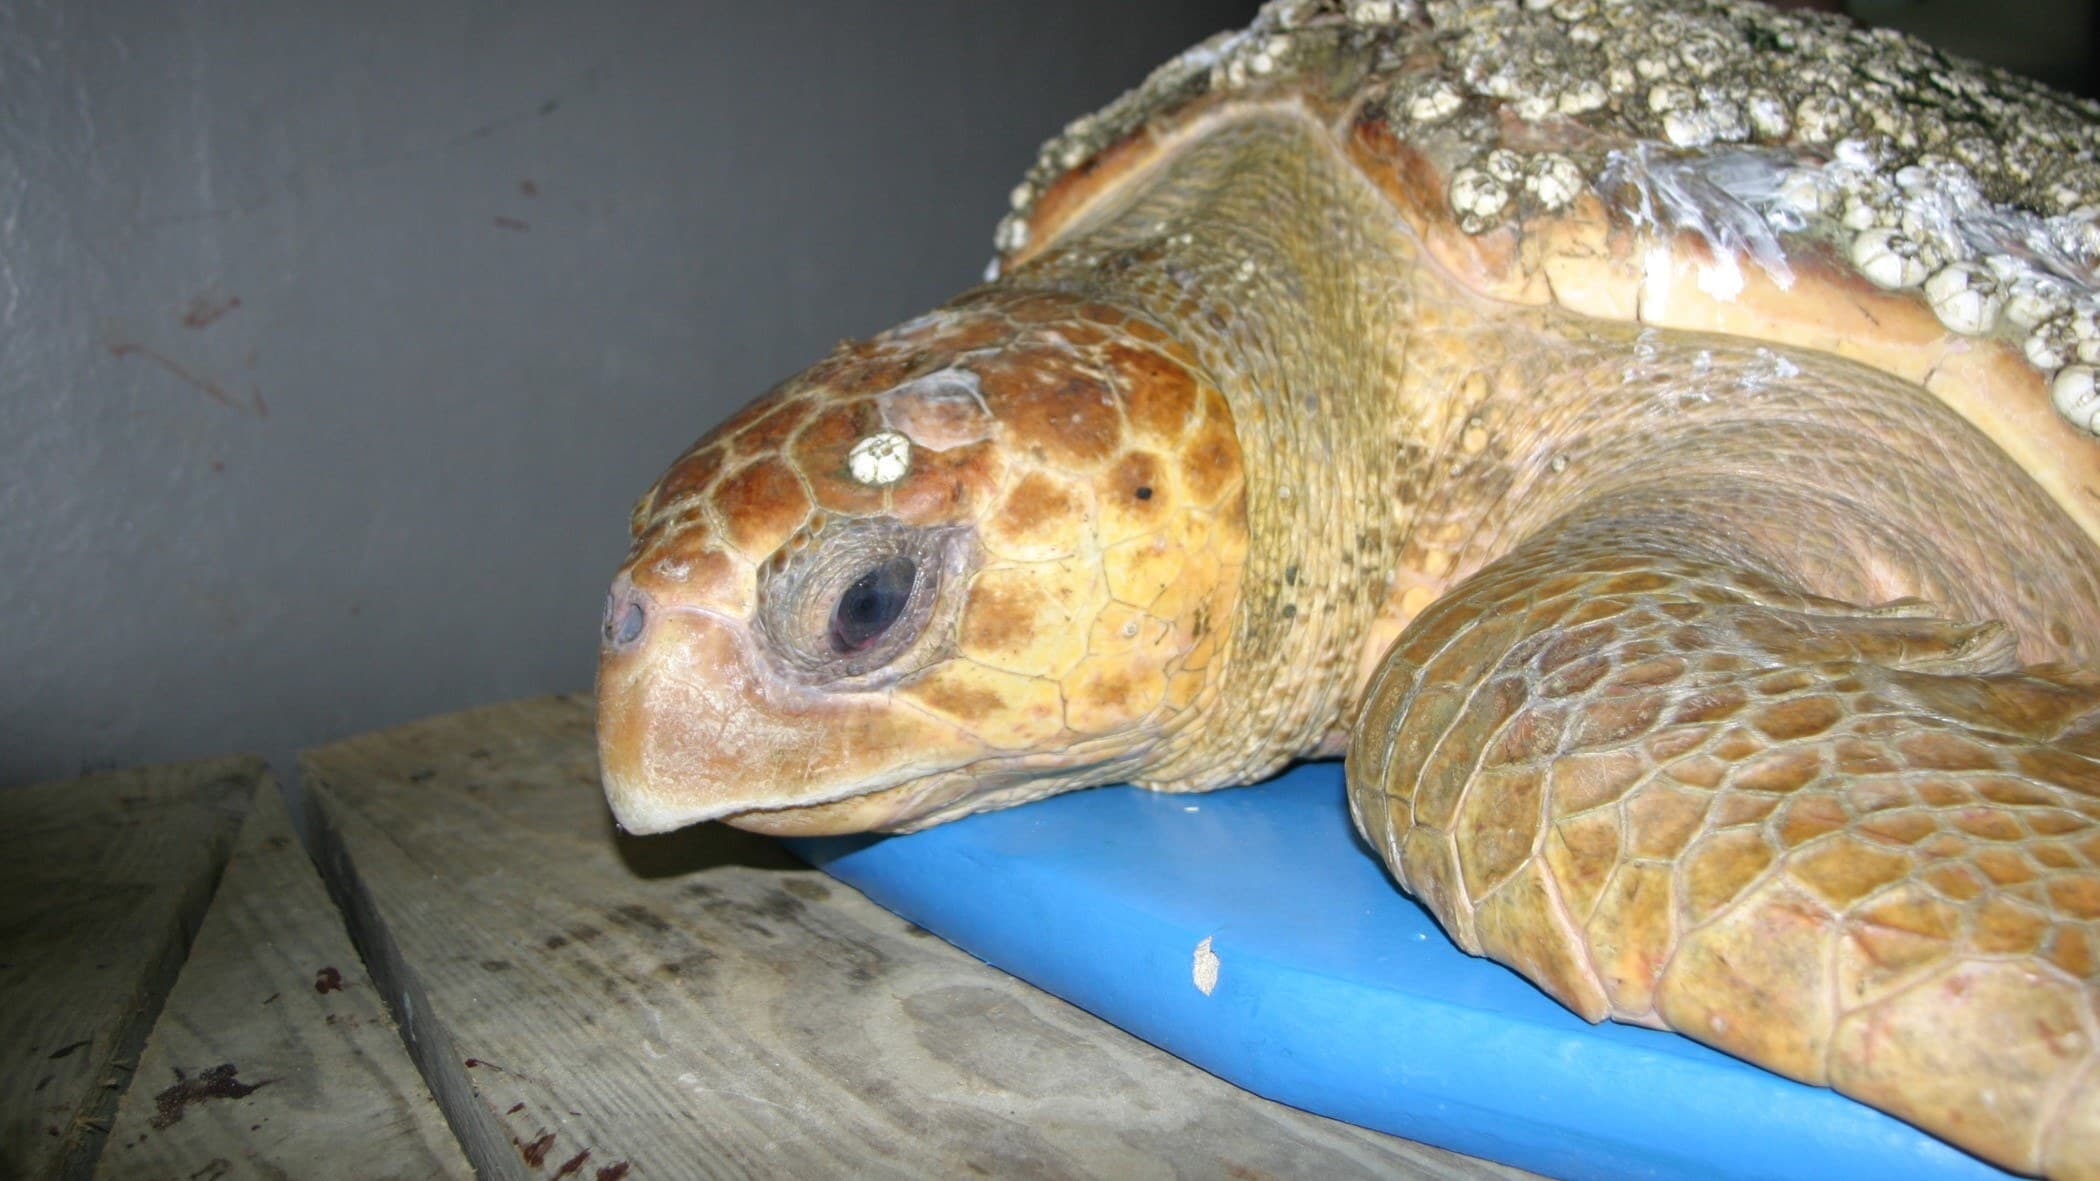 Boise the rehabilitated sea turtle wide